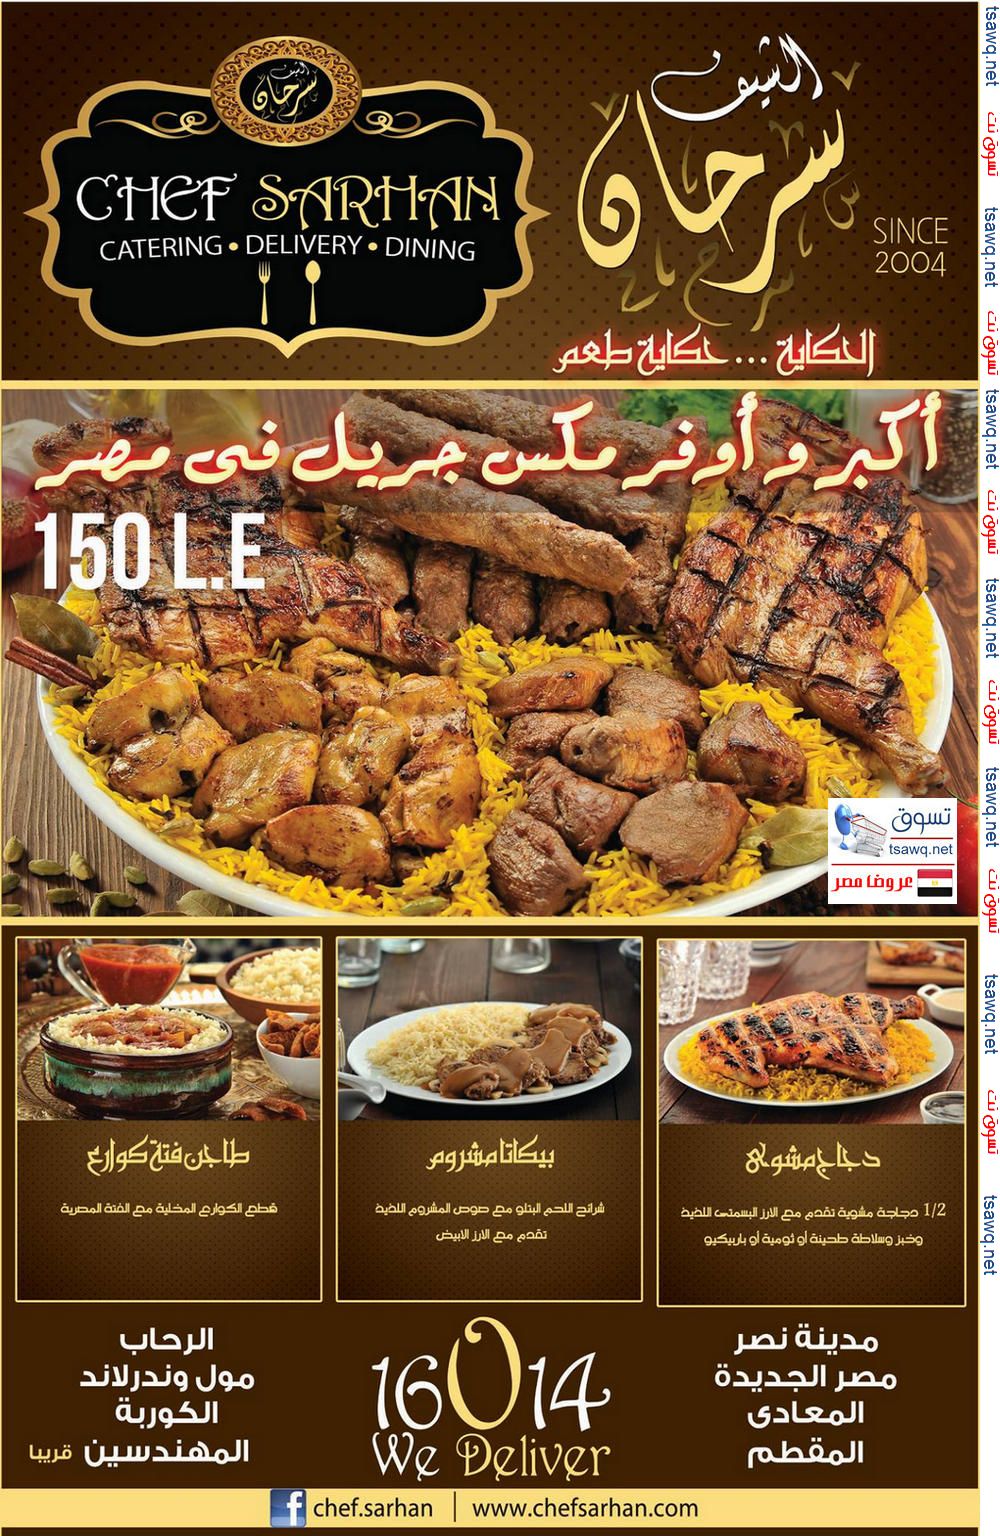 أكبر وأوفر مكس جريل فى مصر من مطاعم الشيف سرحان بسعر 150 جنية اعلان 83